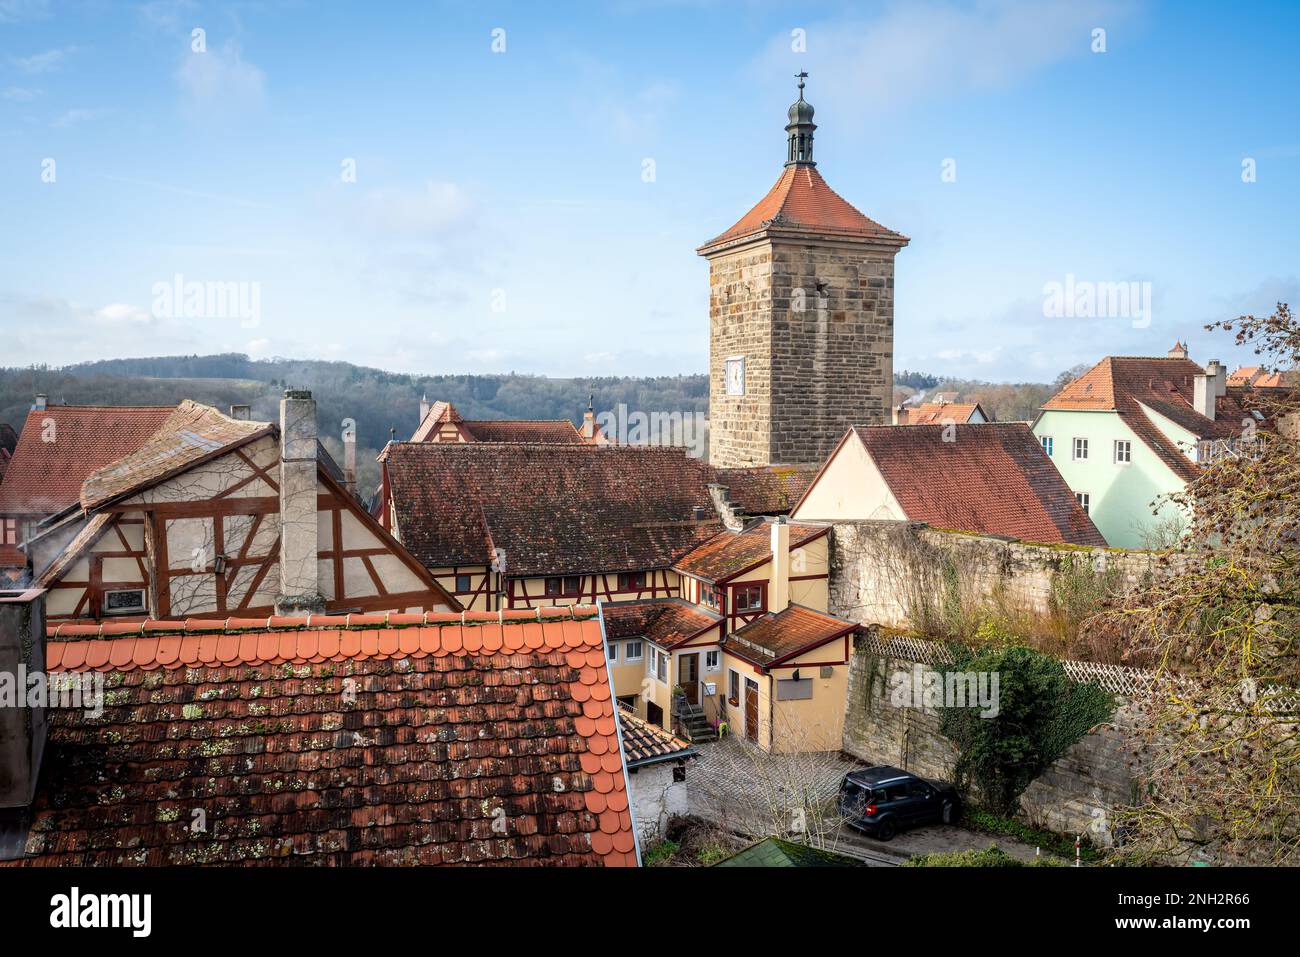 Blick auf die Altstadt mit Siebersturm - Rothenburg ob der Tauber, Bayern, Deutschland Stockfoto